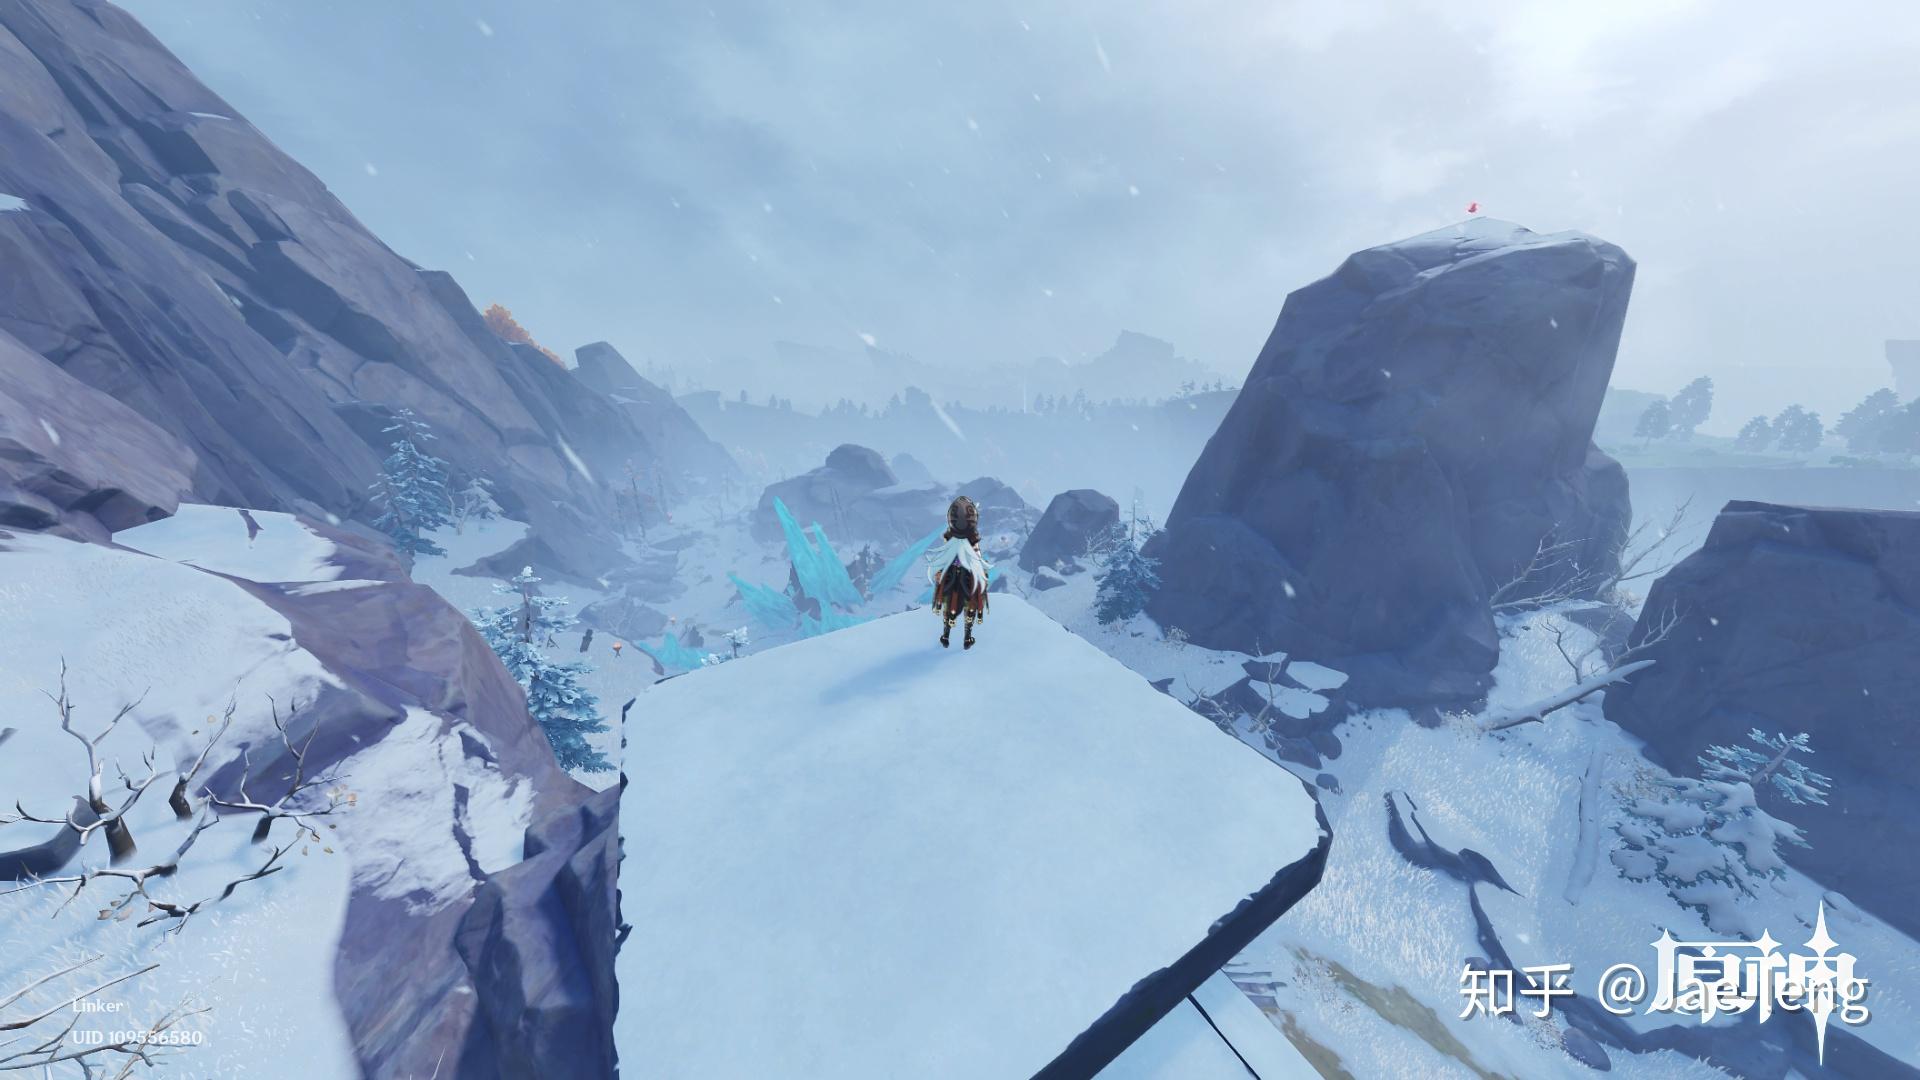 2版本新区域「龙脊雪山」的游戏设计水平?